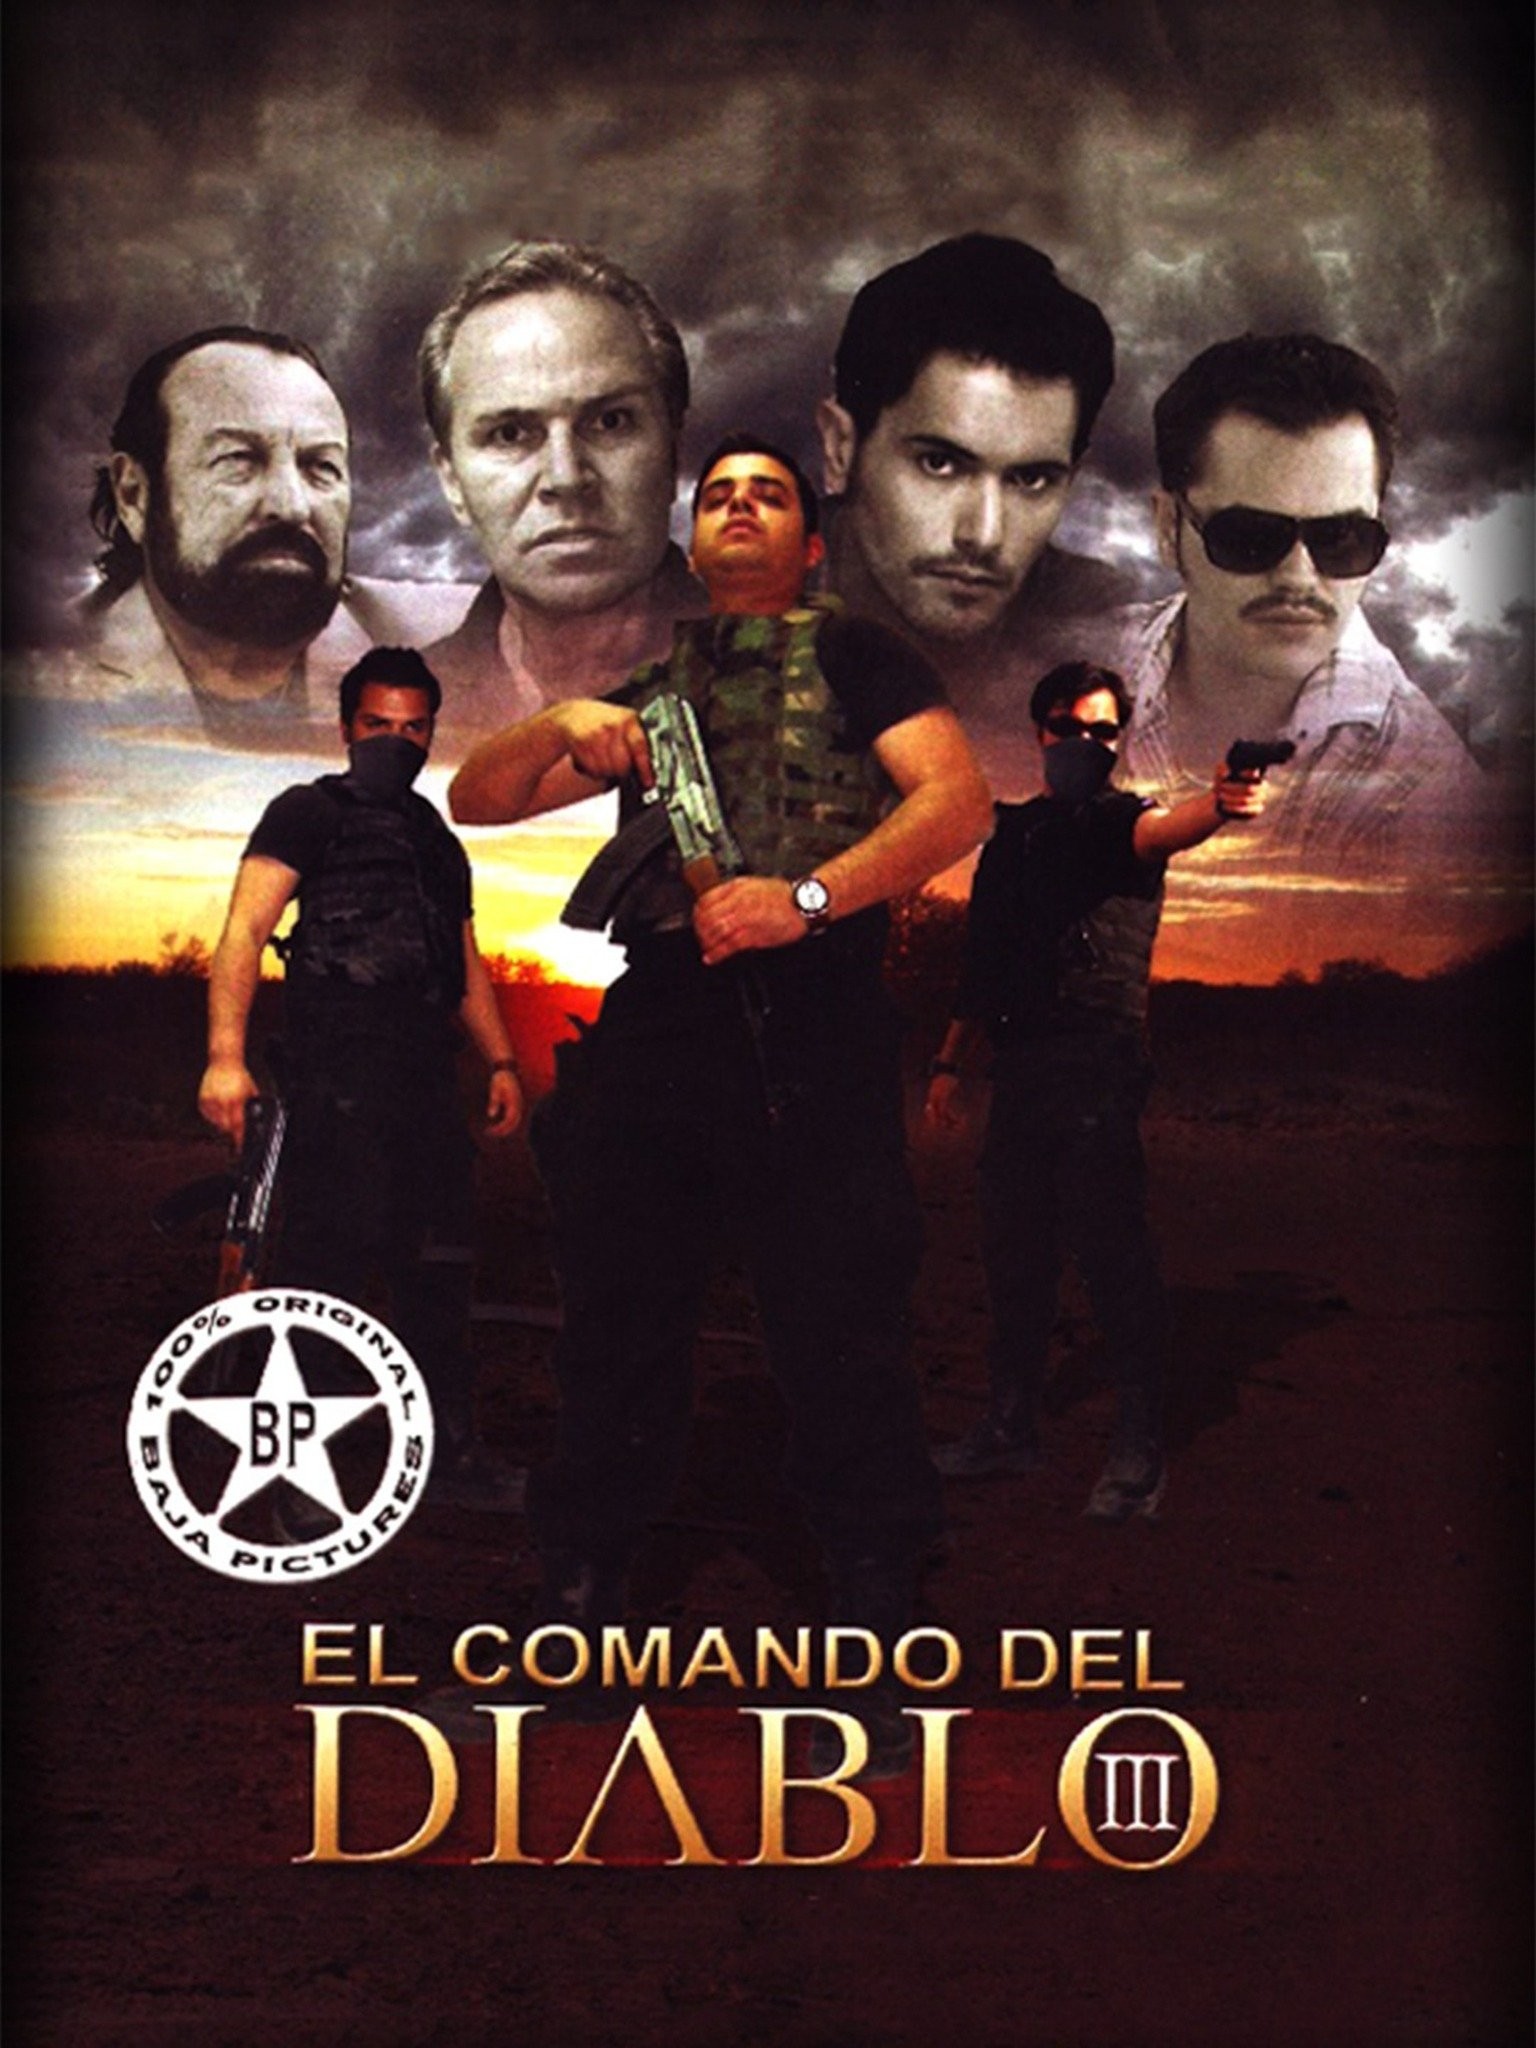 El comando del diablo (Video 2011) - IMDb